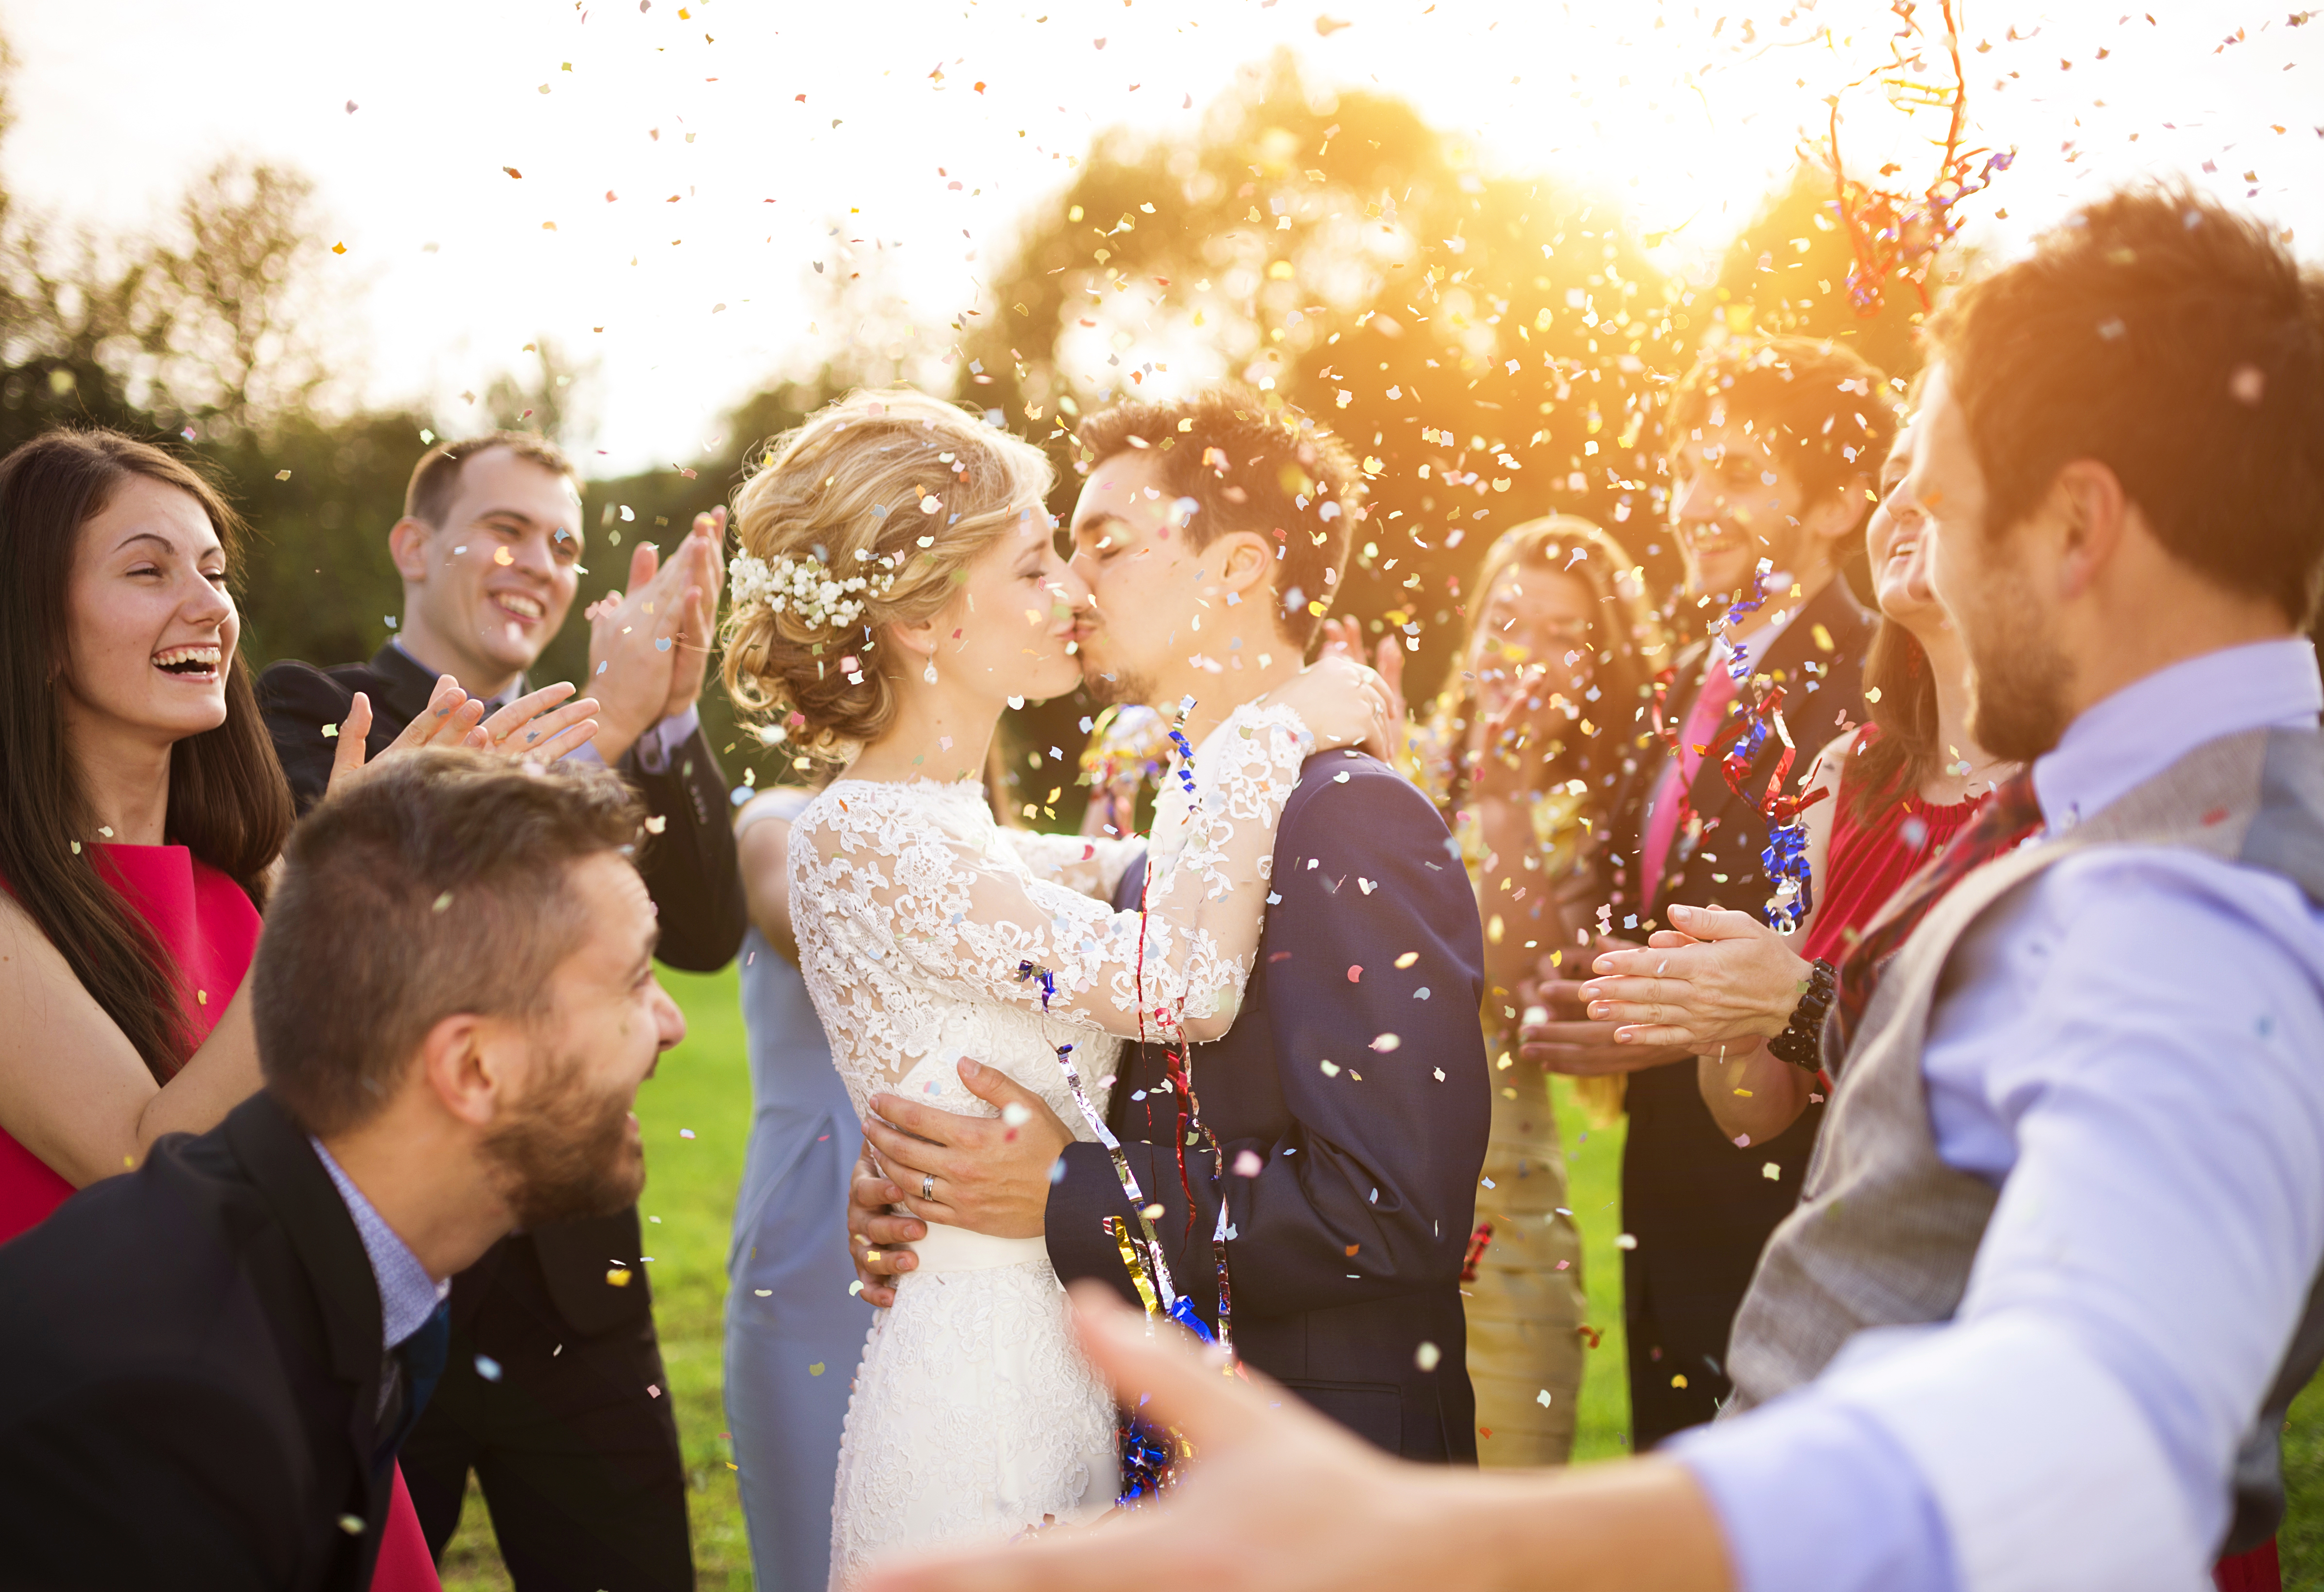 Ein verheiratetes Paar beim Küssen | Quelle:  Shutterstock